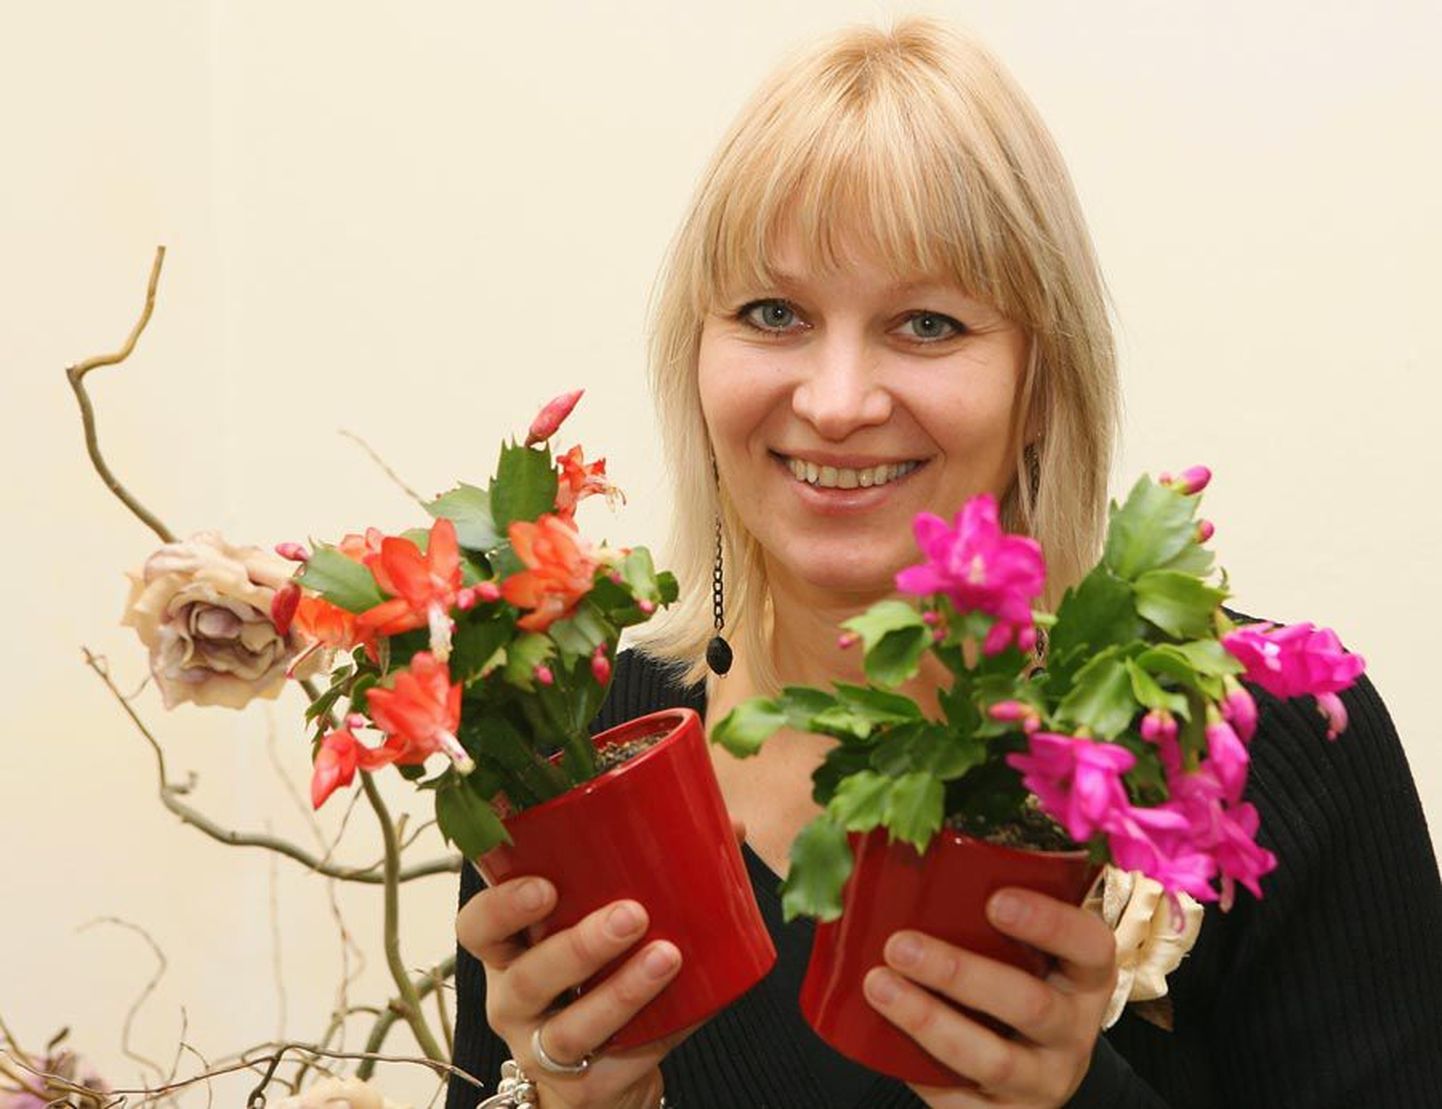 Viljandi Jardini lillepoe müüja Kaili Kasak ja jõulukaktused. Viimastel aastatel on sordiaretuse tulemusena ilmunud lettidele ohtralt hübriide, mille õite kuju ja värv on tavapärasest erinev.